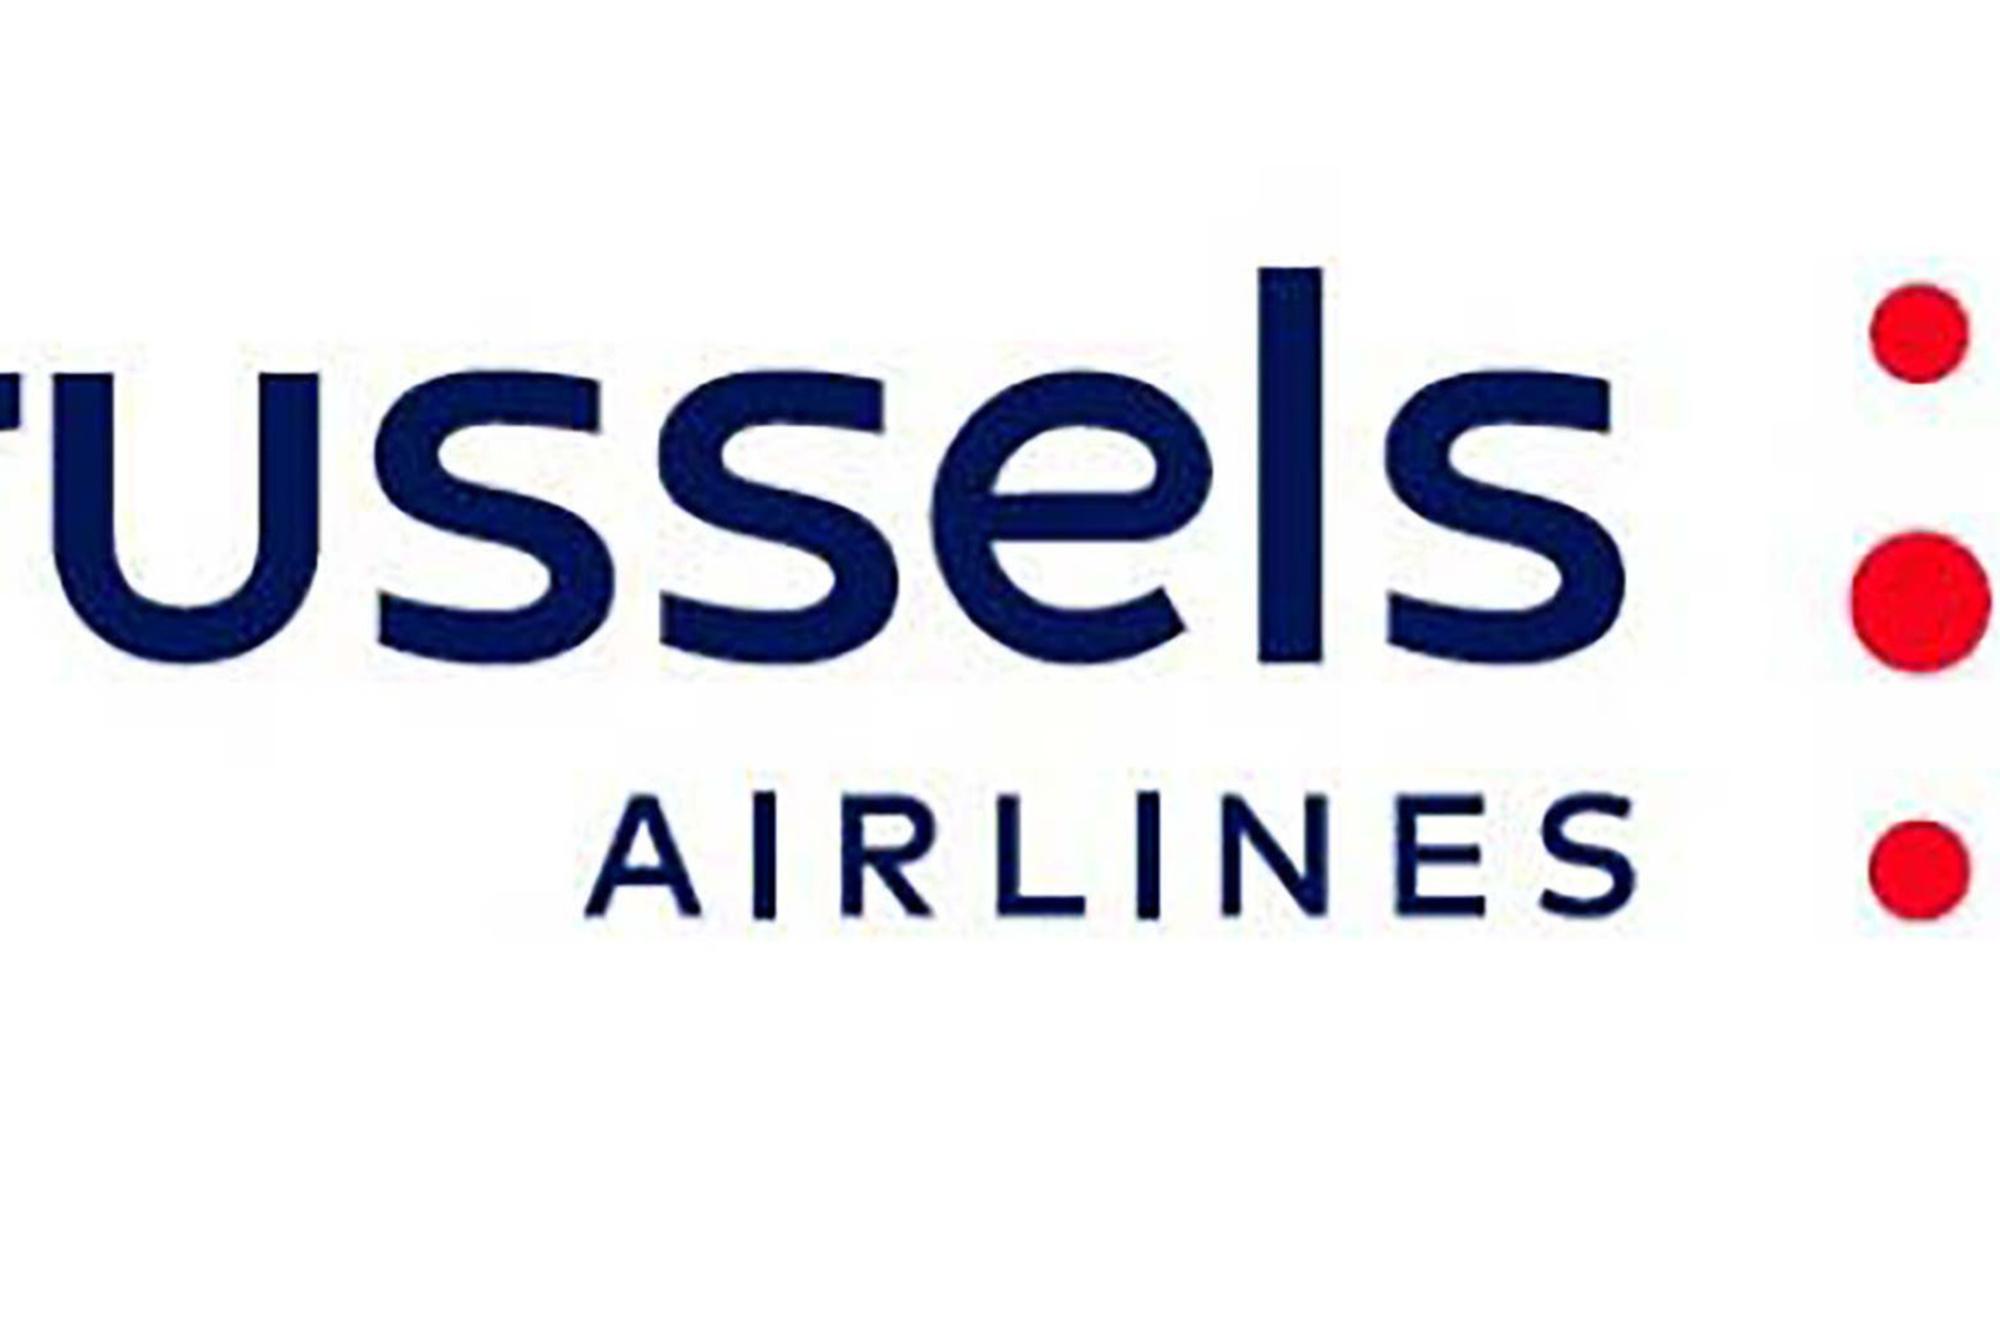 Le nouveau logo de Brussels Airlines